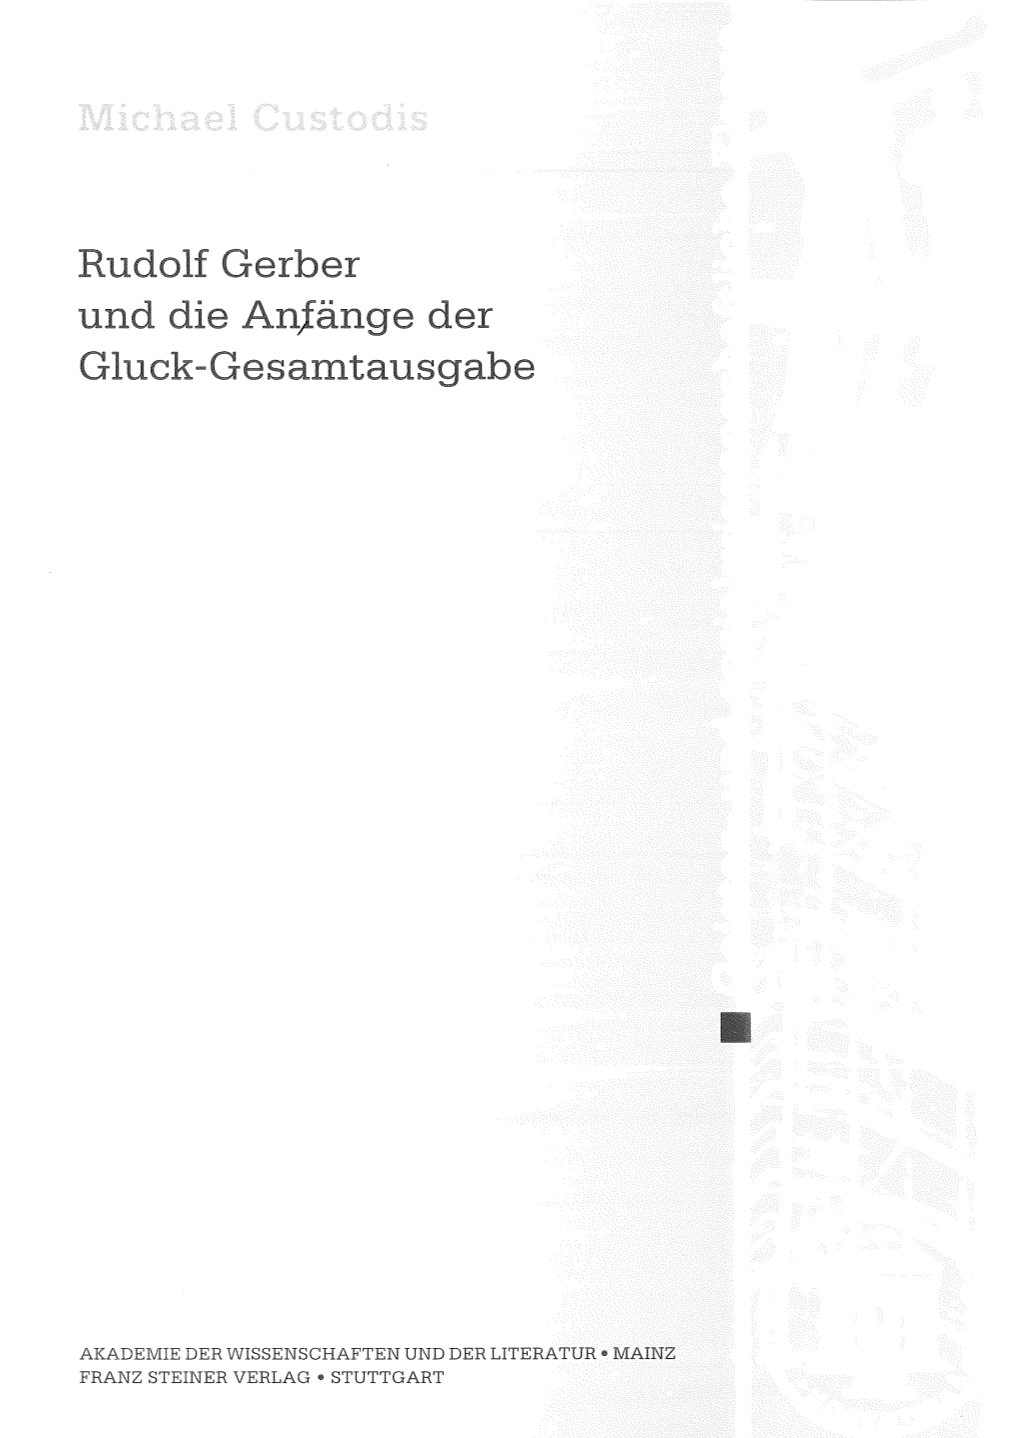 Custodis 57 S., € 13,- ISBN 978-3-515-09917-2 29 S., € 7,- 3